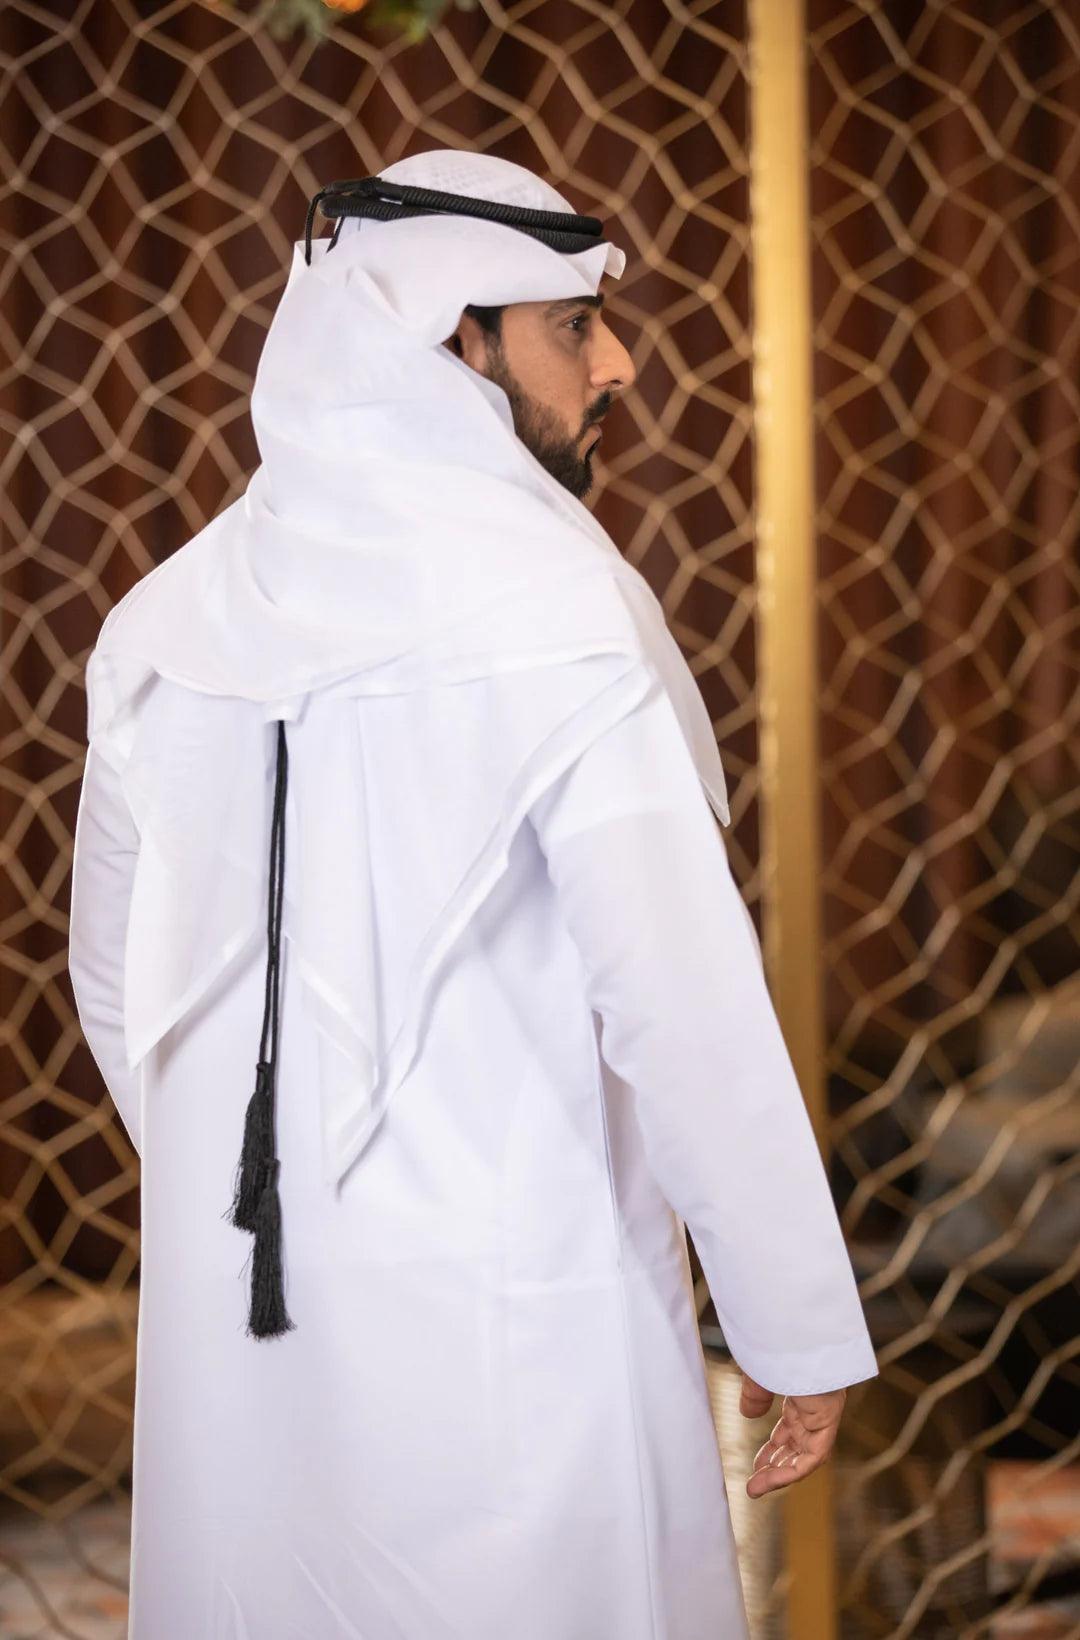 Premium White Saudi style Shemagh/Keffiyyah Arab Men's Scarf